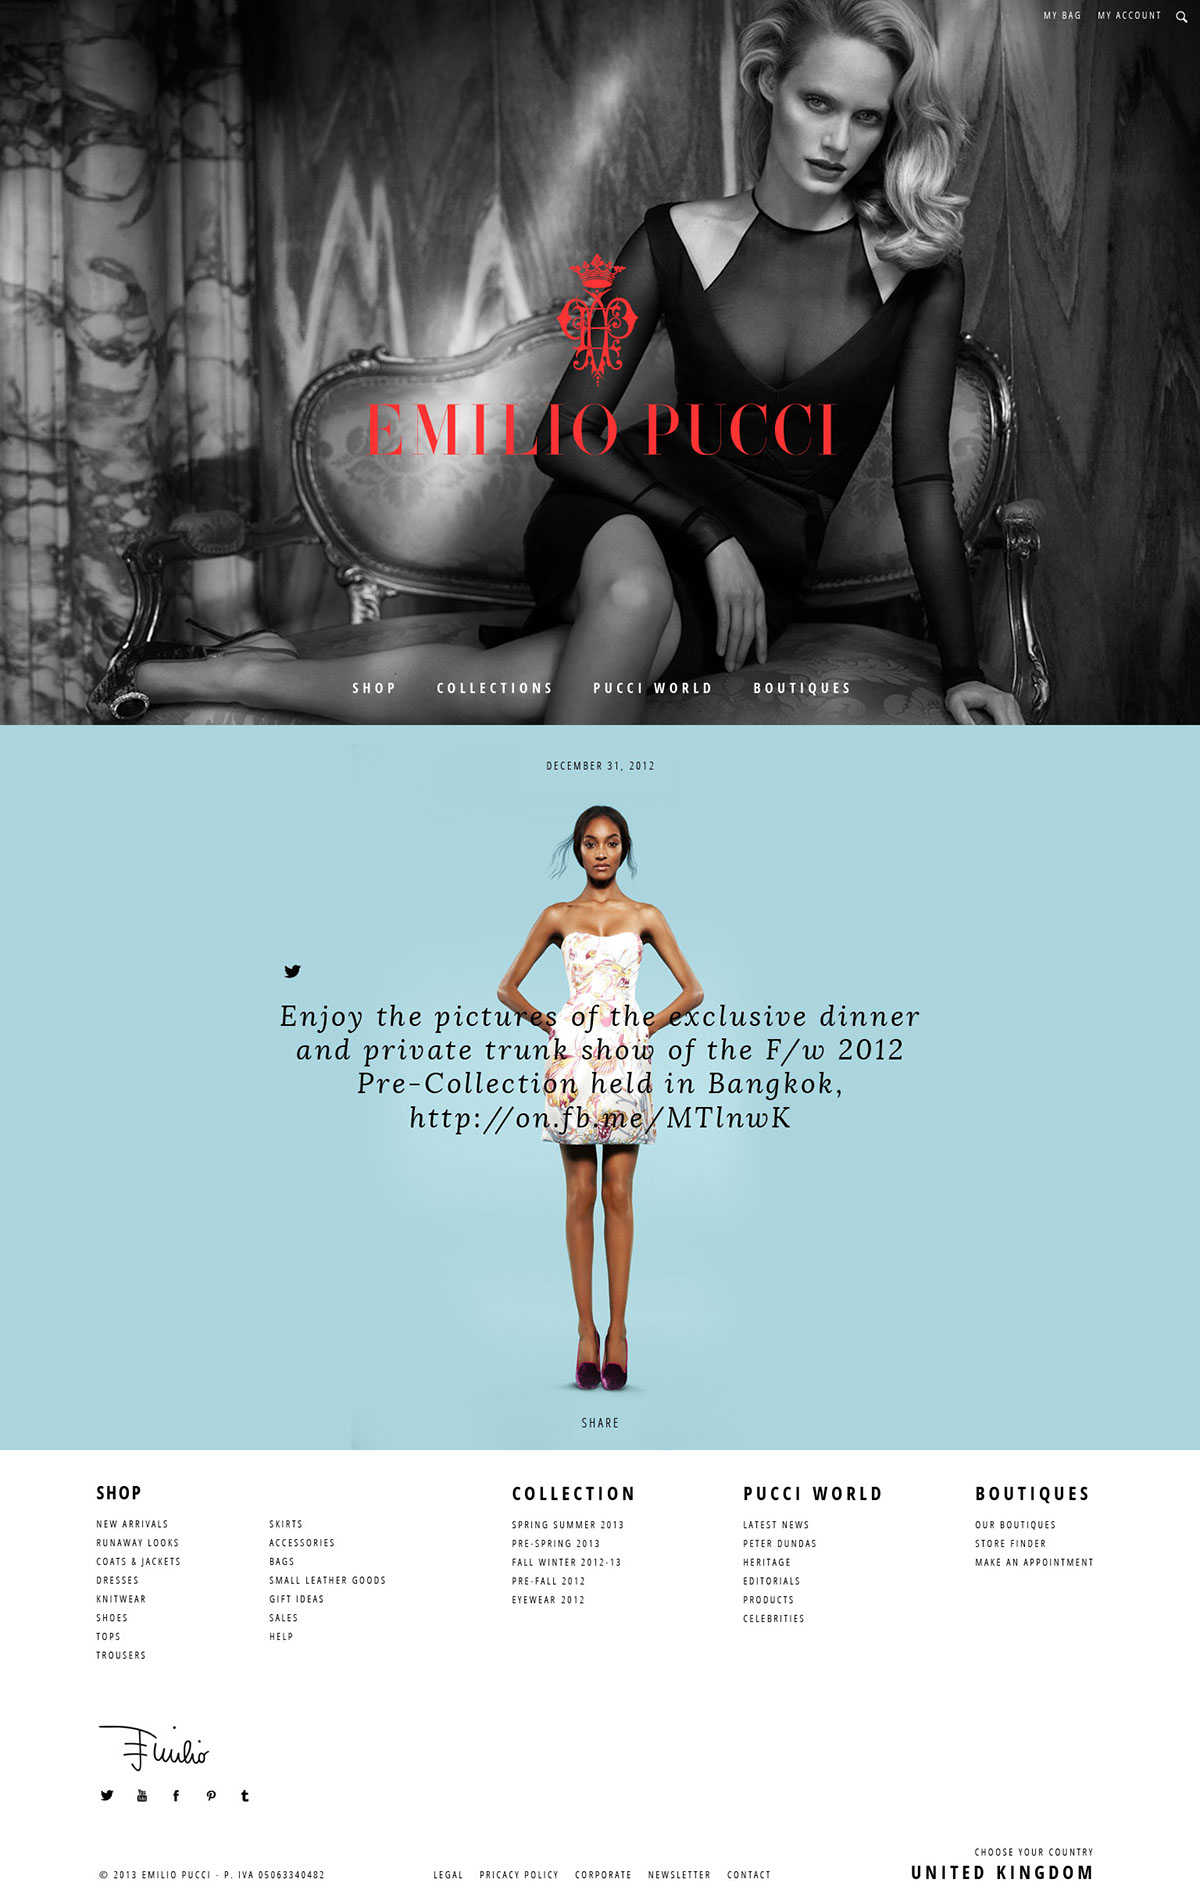 e-commerce Fashion  Pucci Emilio Pucci Web Design  UI